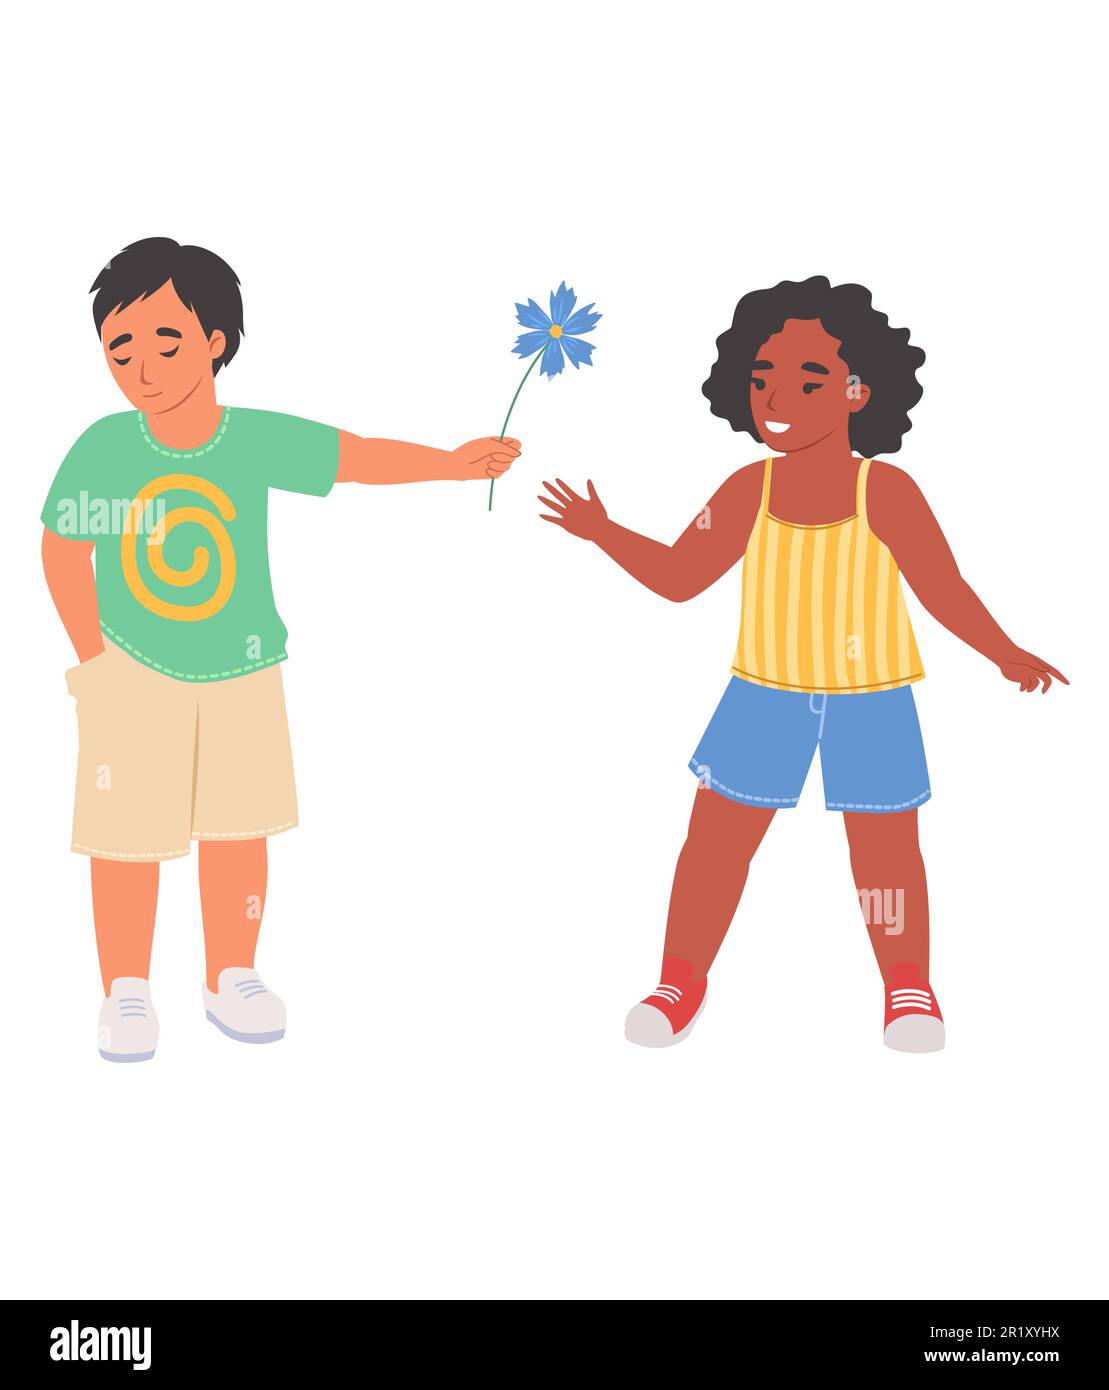 Shy little boy giving flower to girl vector illustration Stock Vector